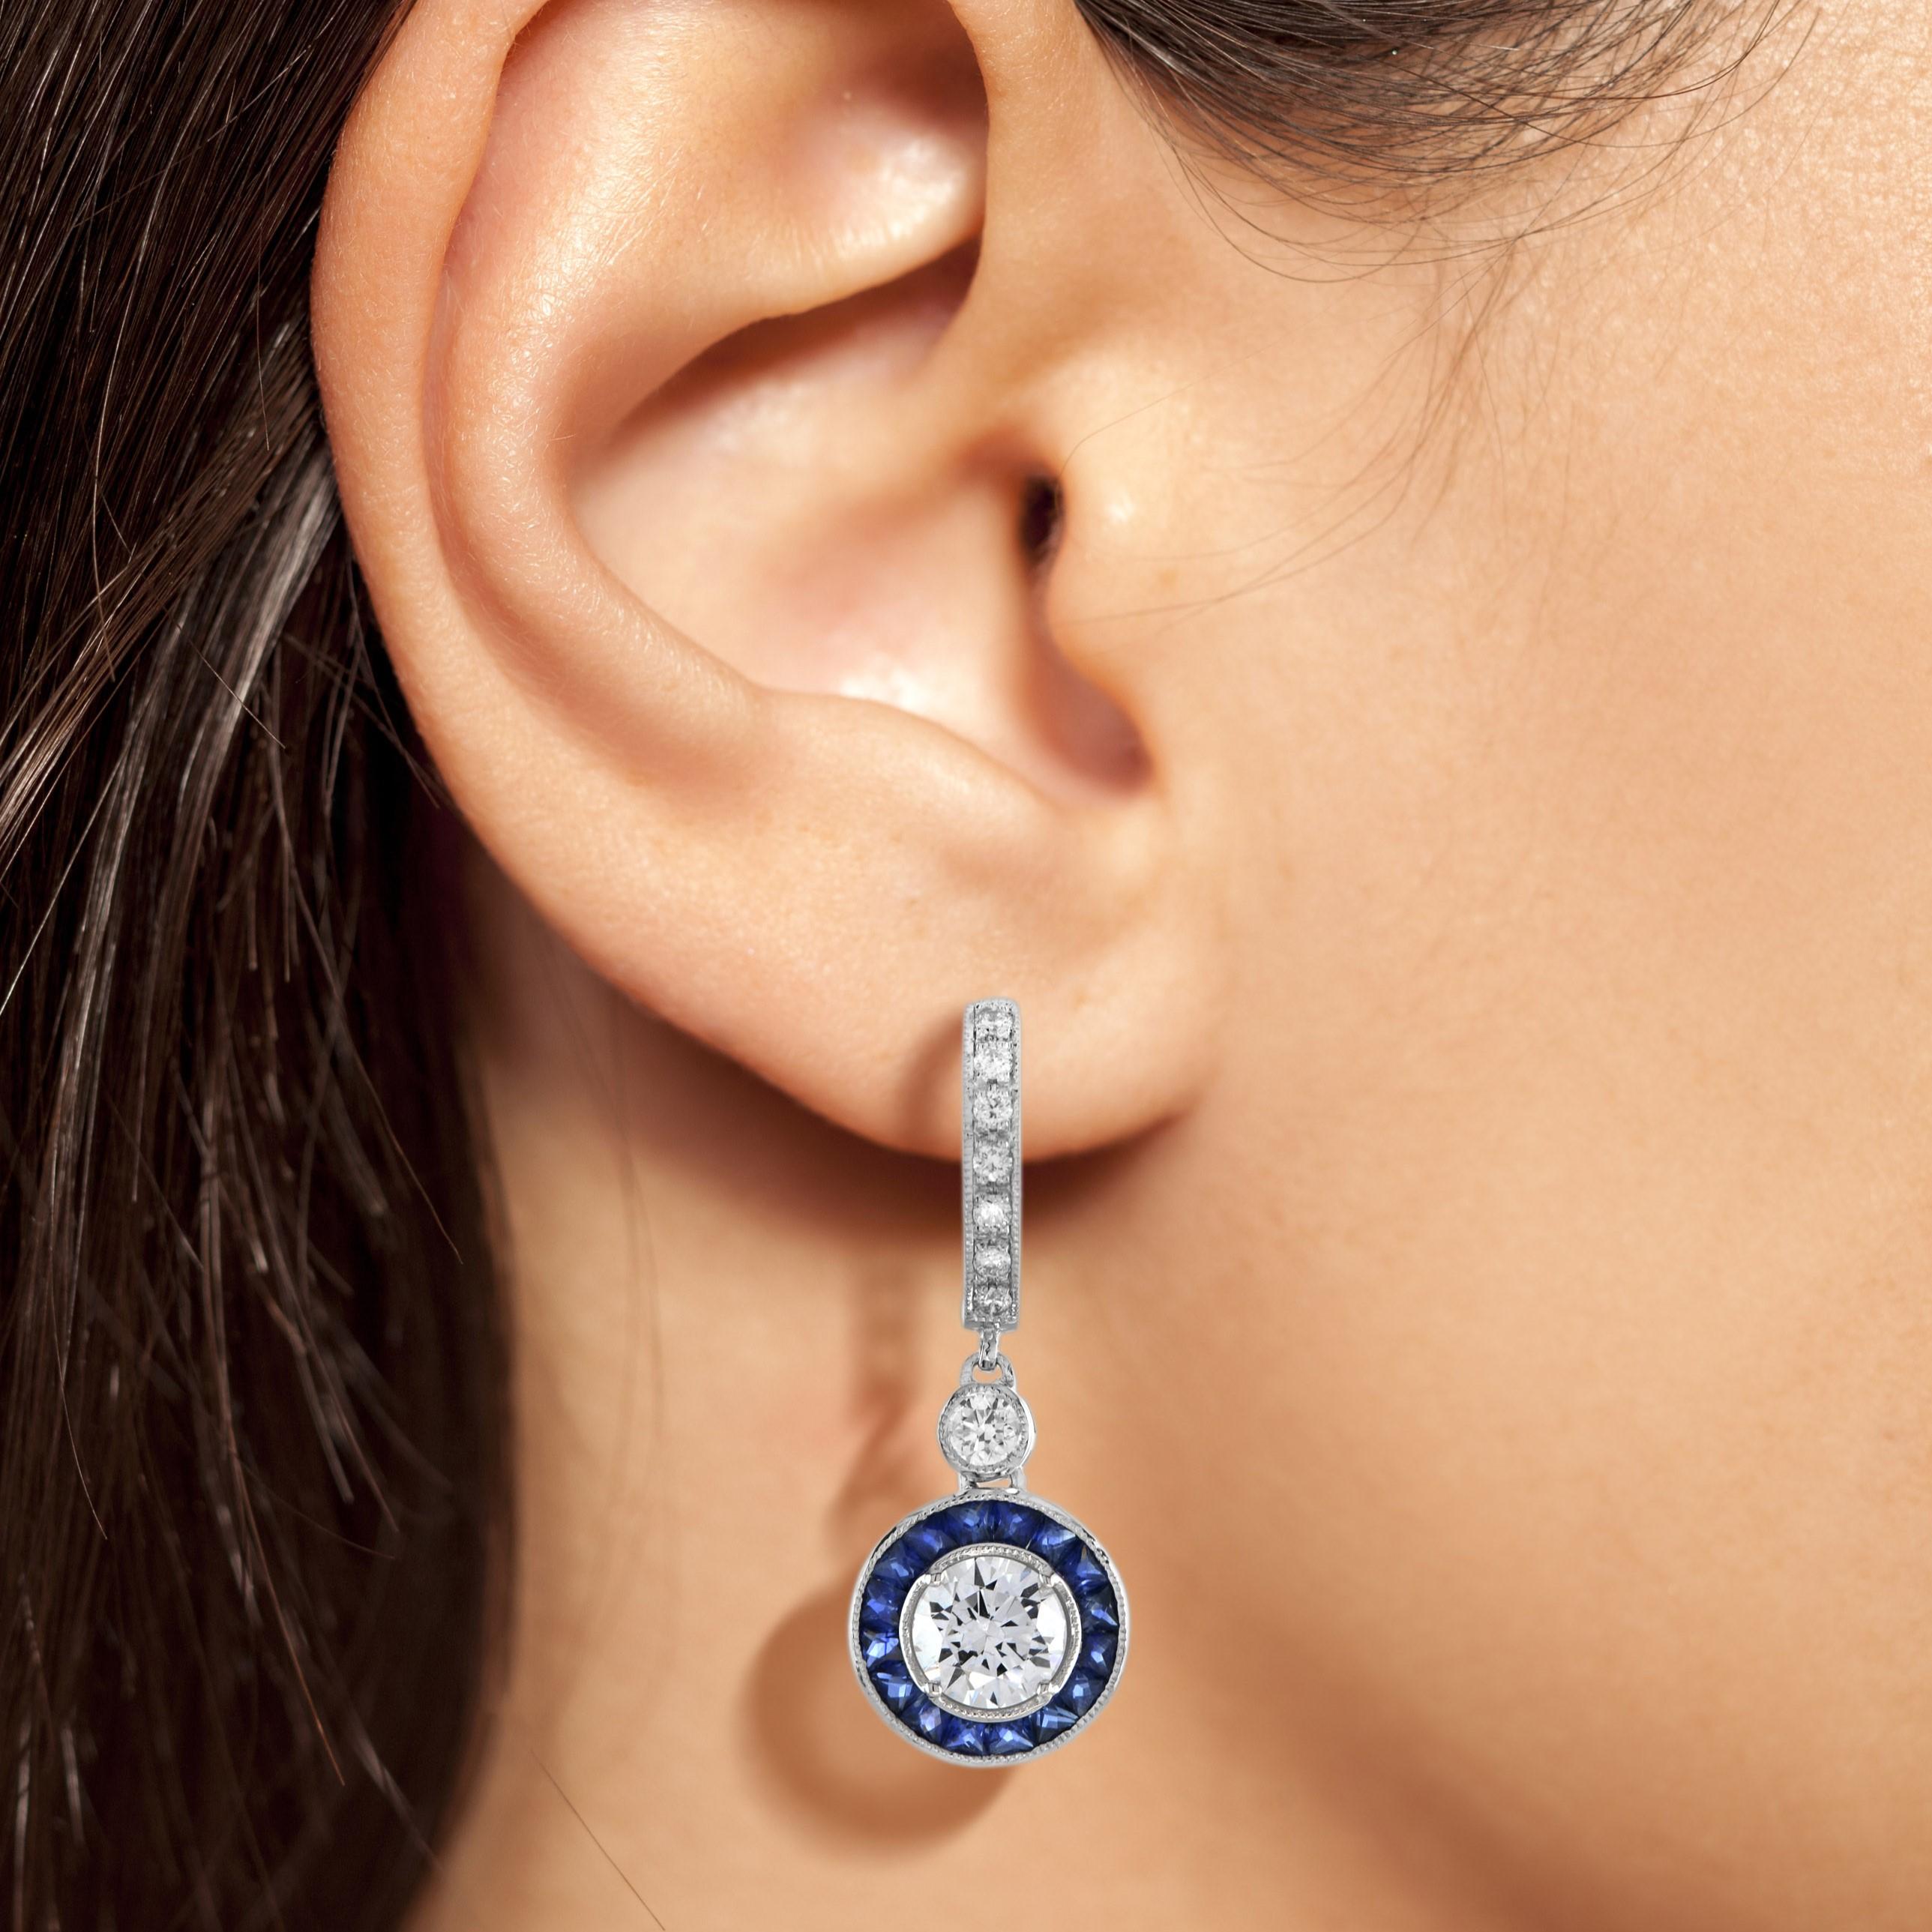 Exquises boucles d'oreilles en diamant et saphir bleu inspirées de l'Art déco. Le diamant central est entouré de saphirs en double halo finement sertis à l'extérieur, créant une forme octogonale chic. Les boucles d'oreilles se portent parfaitement